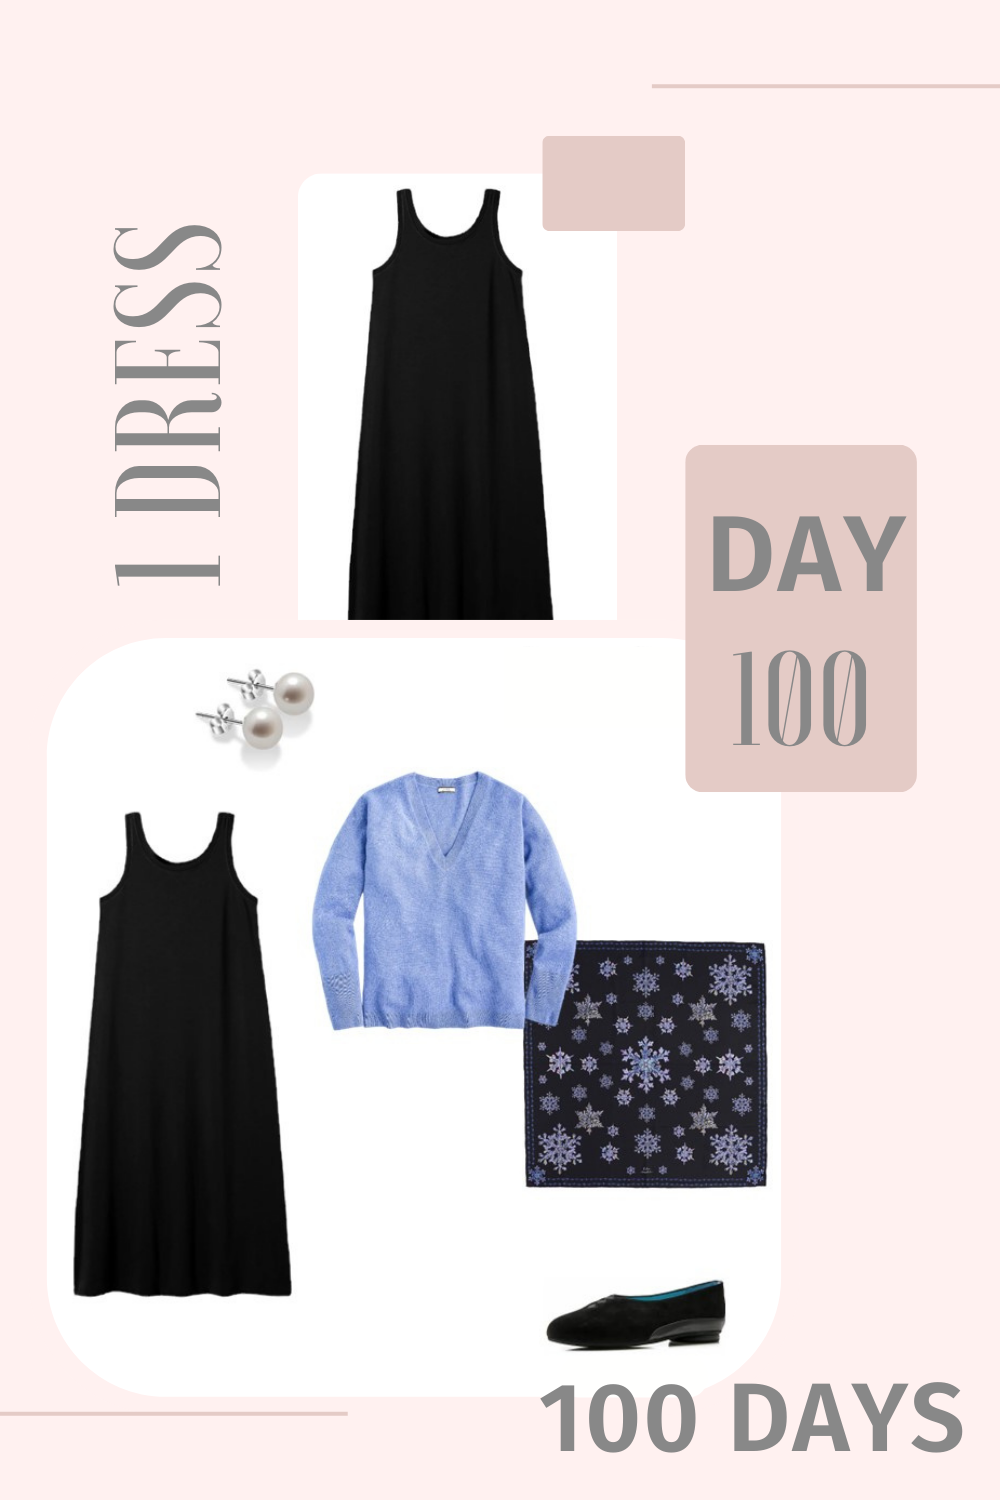 1 Dress 100 Days - Day 100